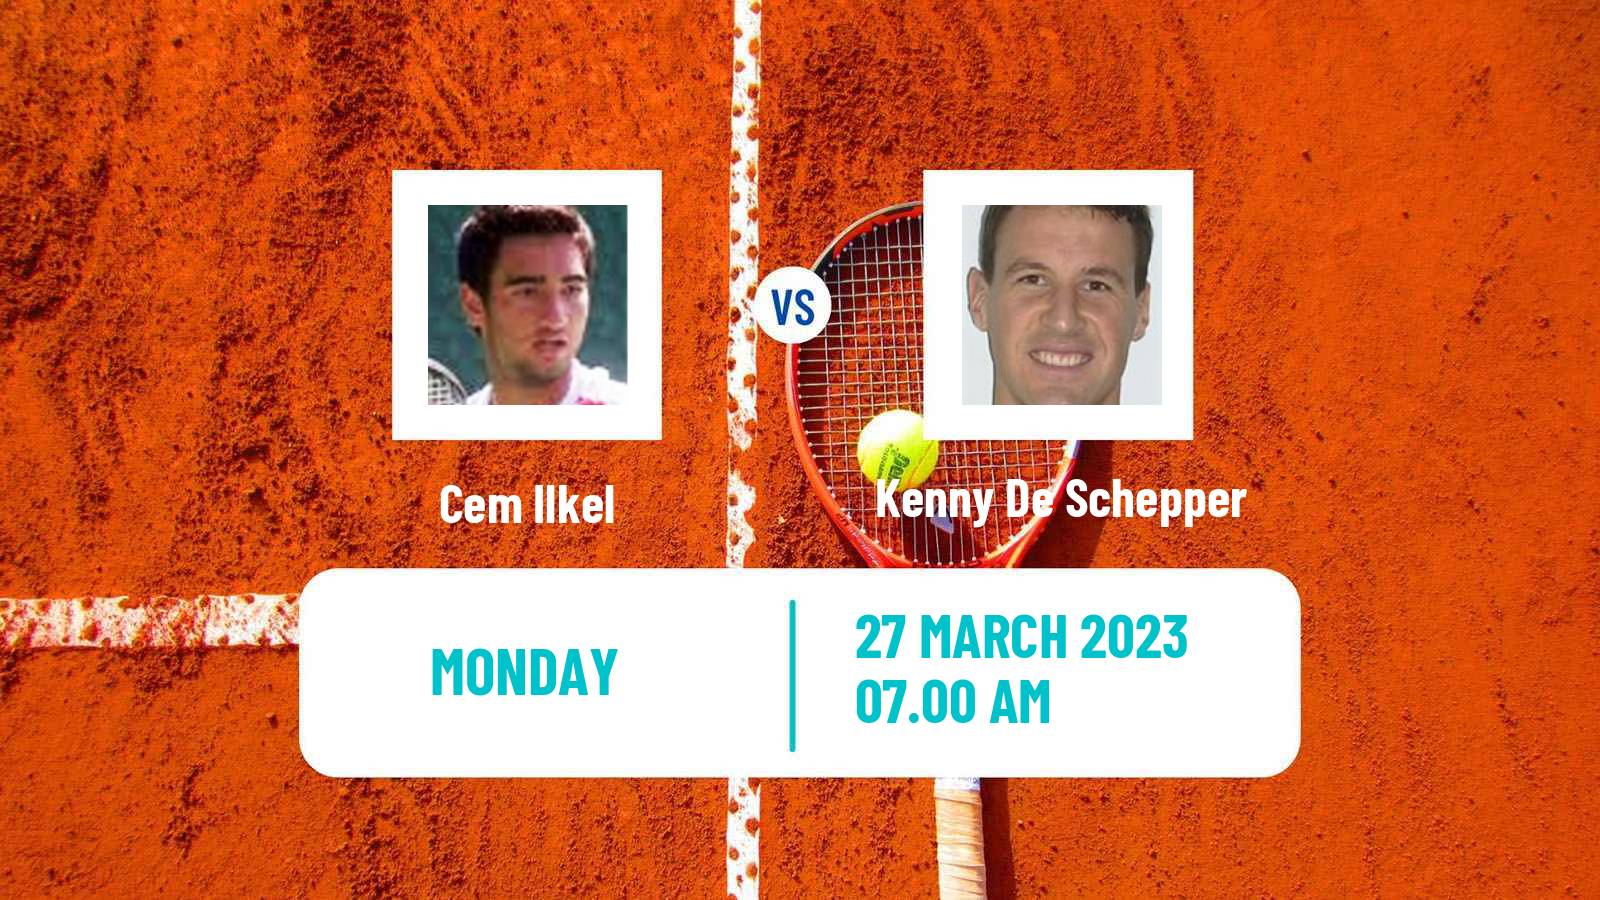 Tennis ATP Challenger Cem Ilkel - Kenny De Schepper